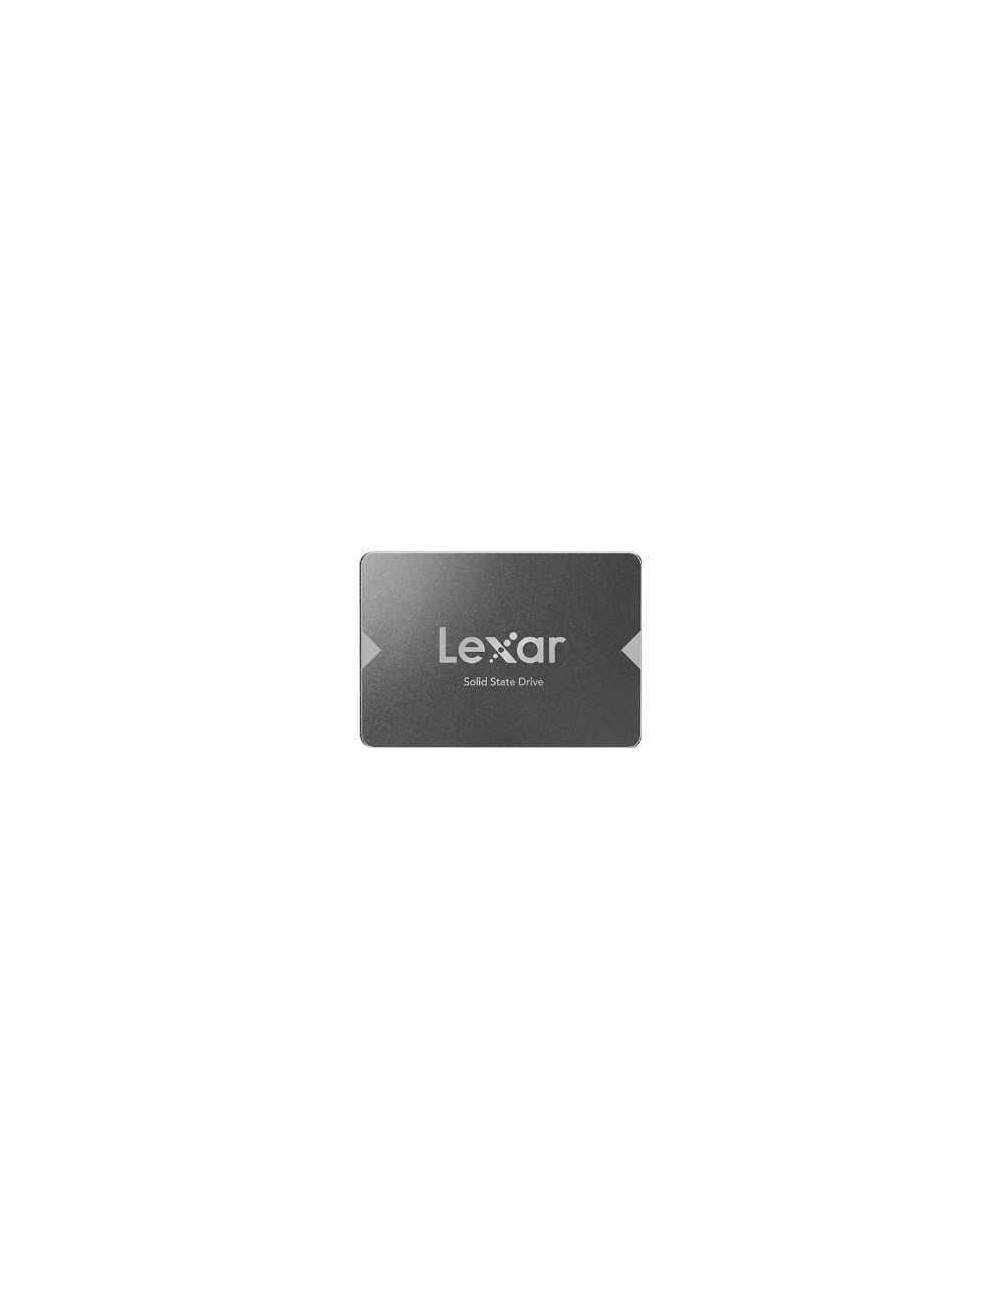 SSD|LEXAR|256GB|SATA 3.0|Read speed 520 MBytes/sec|2,5"|LNS100-256RB